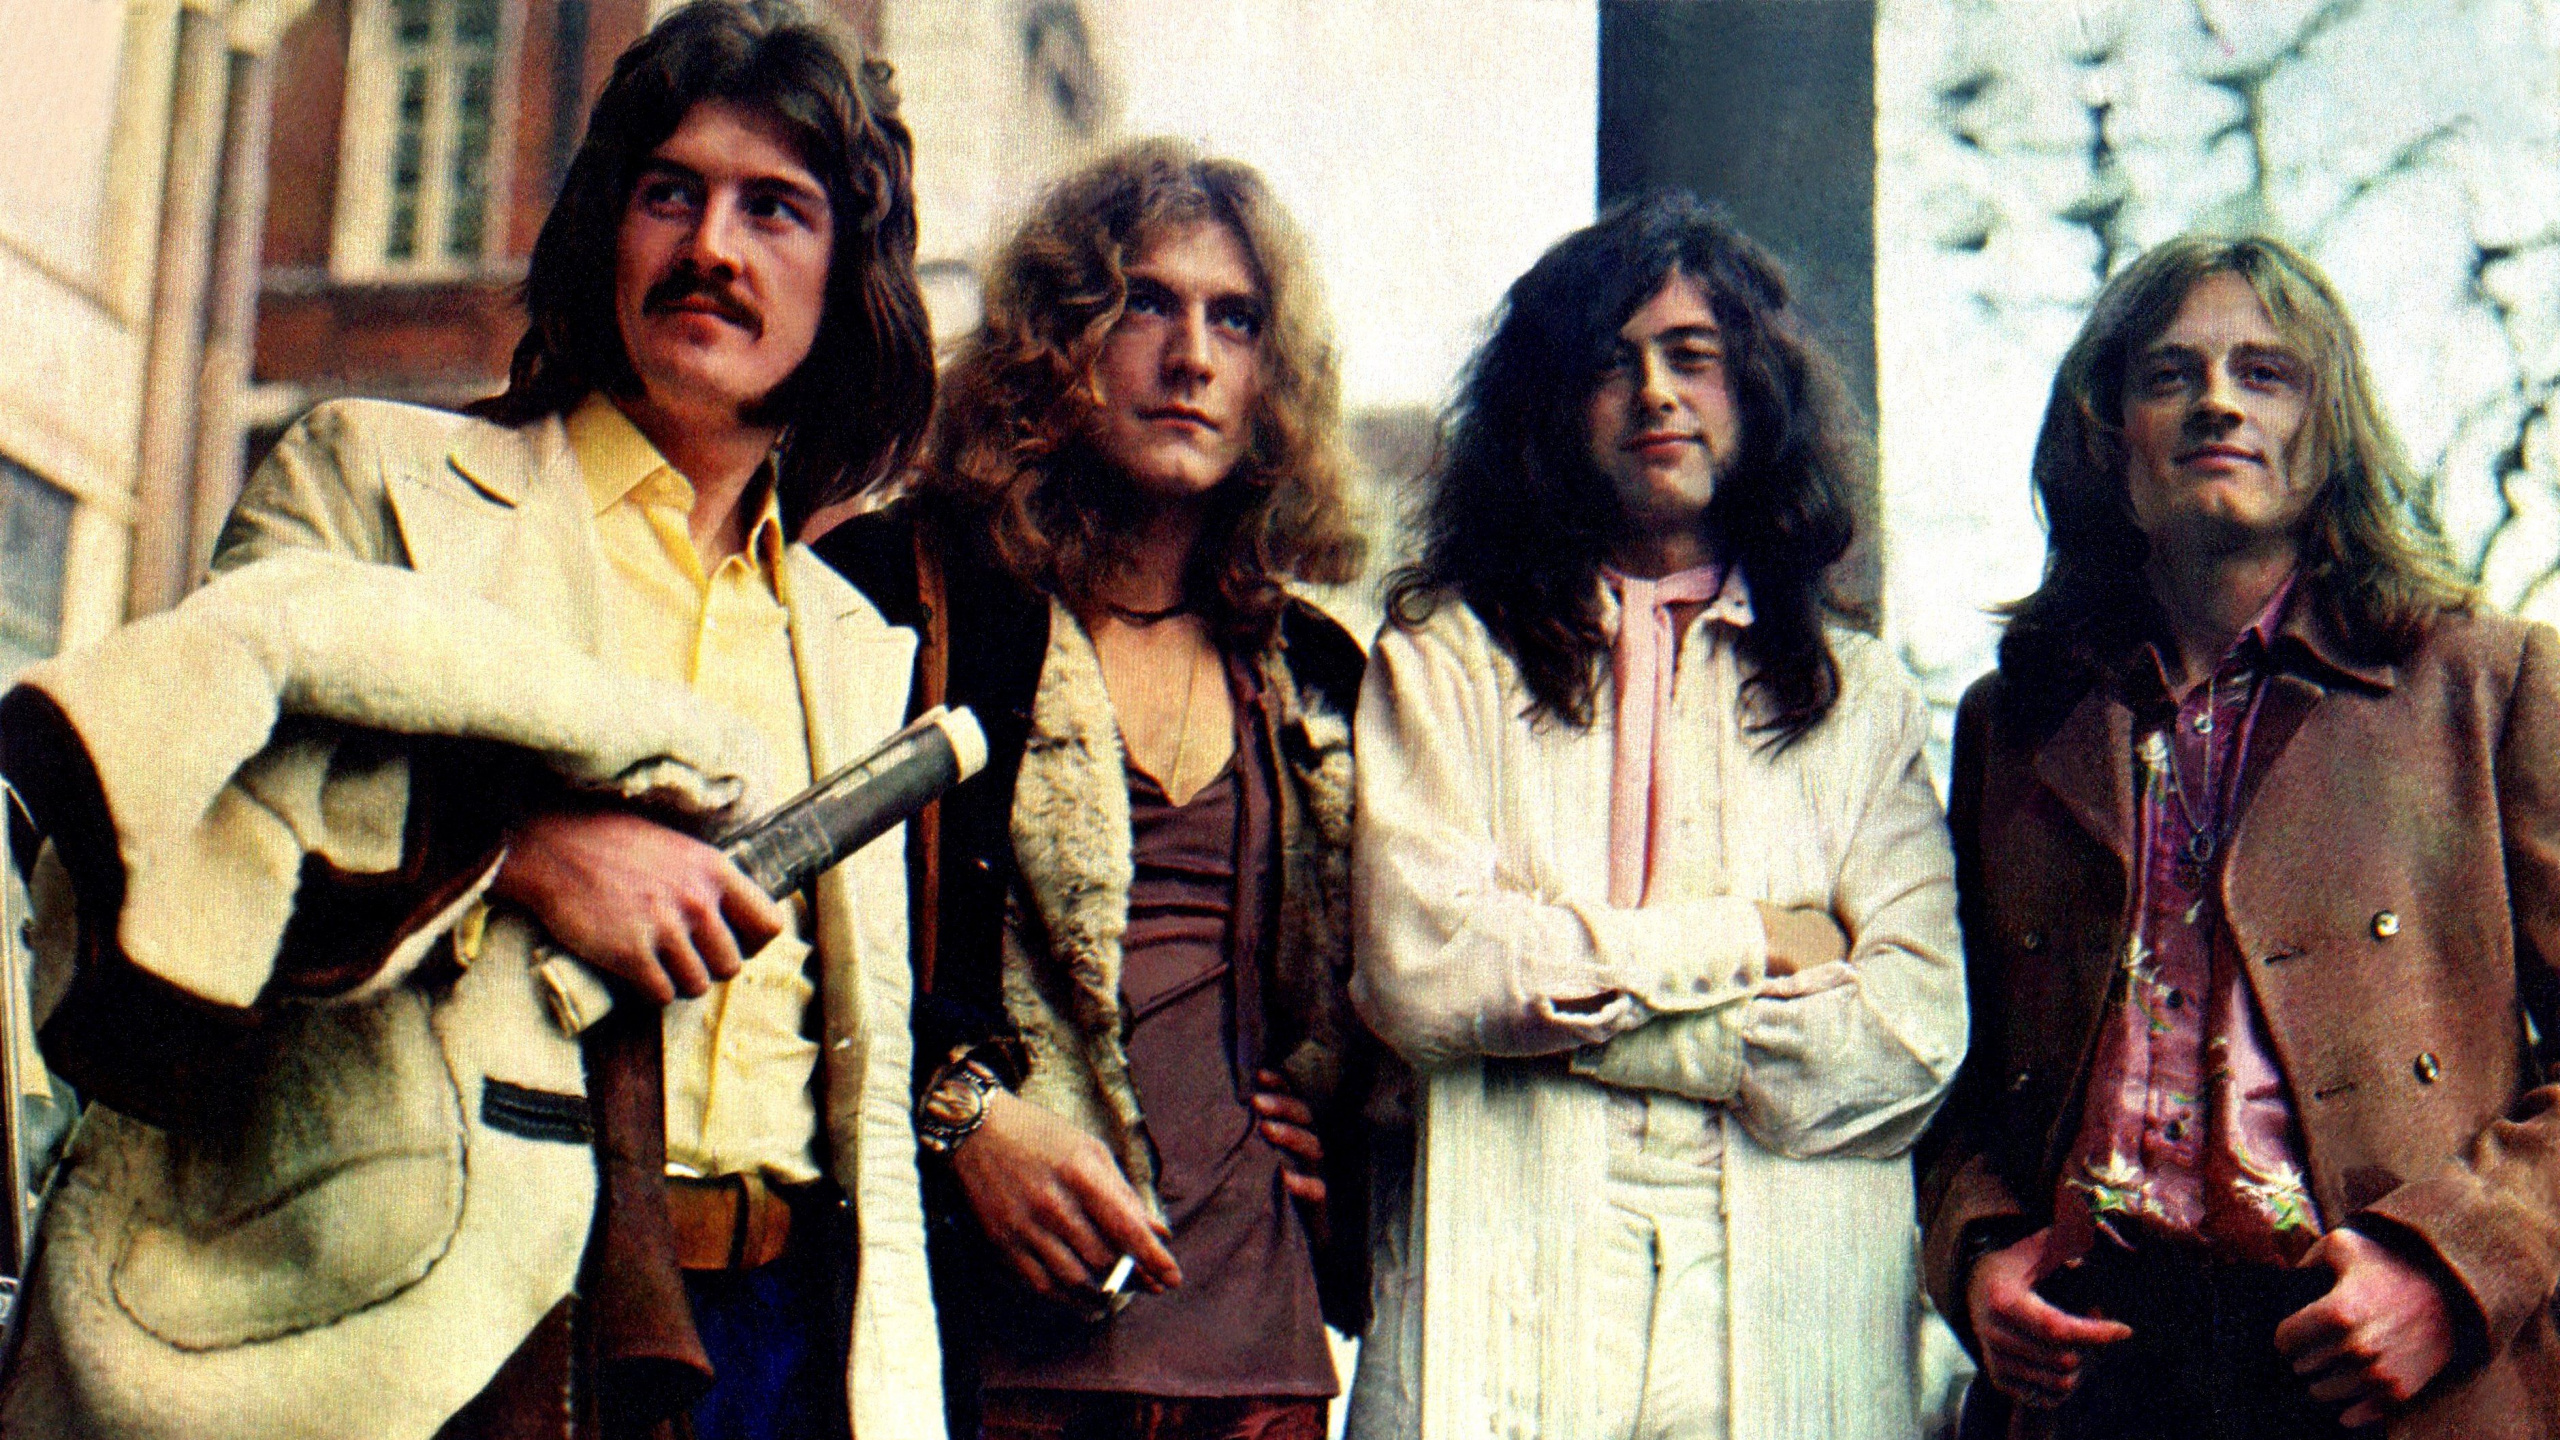 Robert Plant Led Zeppelin, Robert Plant, John Bonham, Jimmy Page, Led Zeppelin. Wallpaper in 2560x1440 Resolution